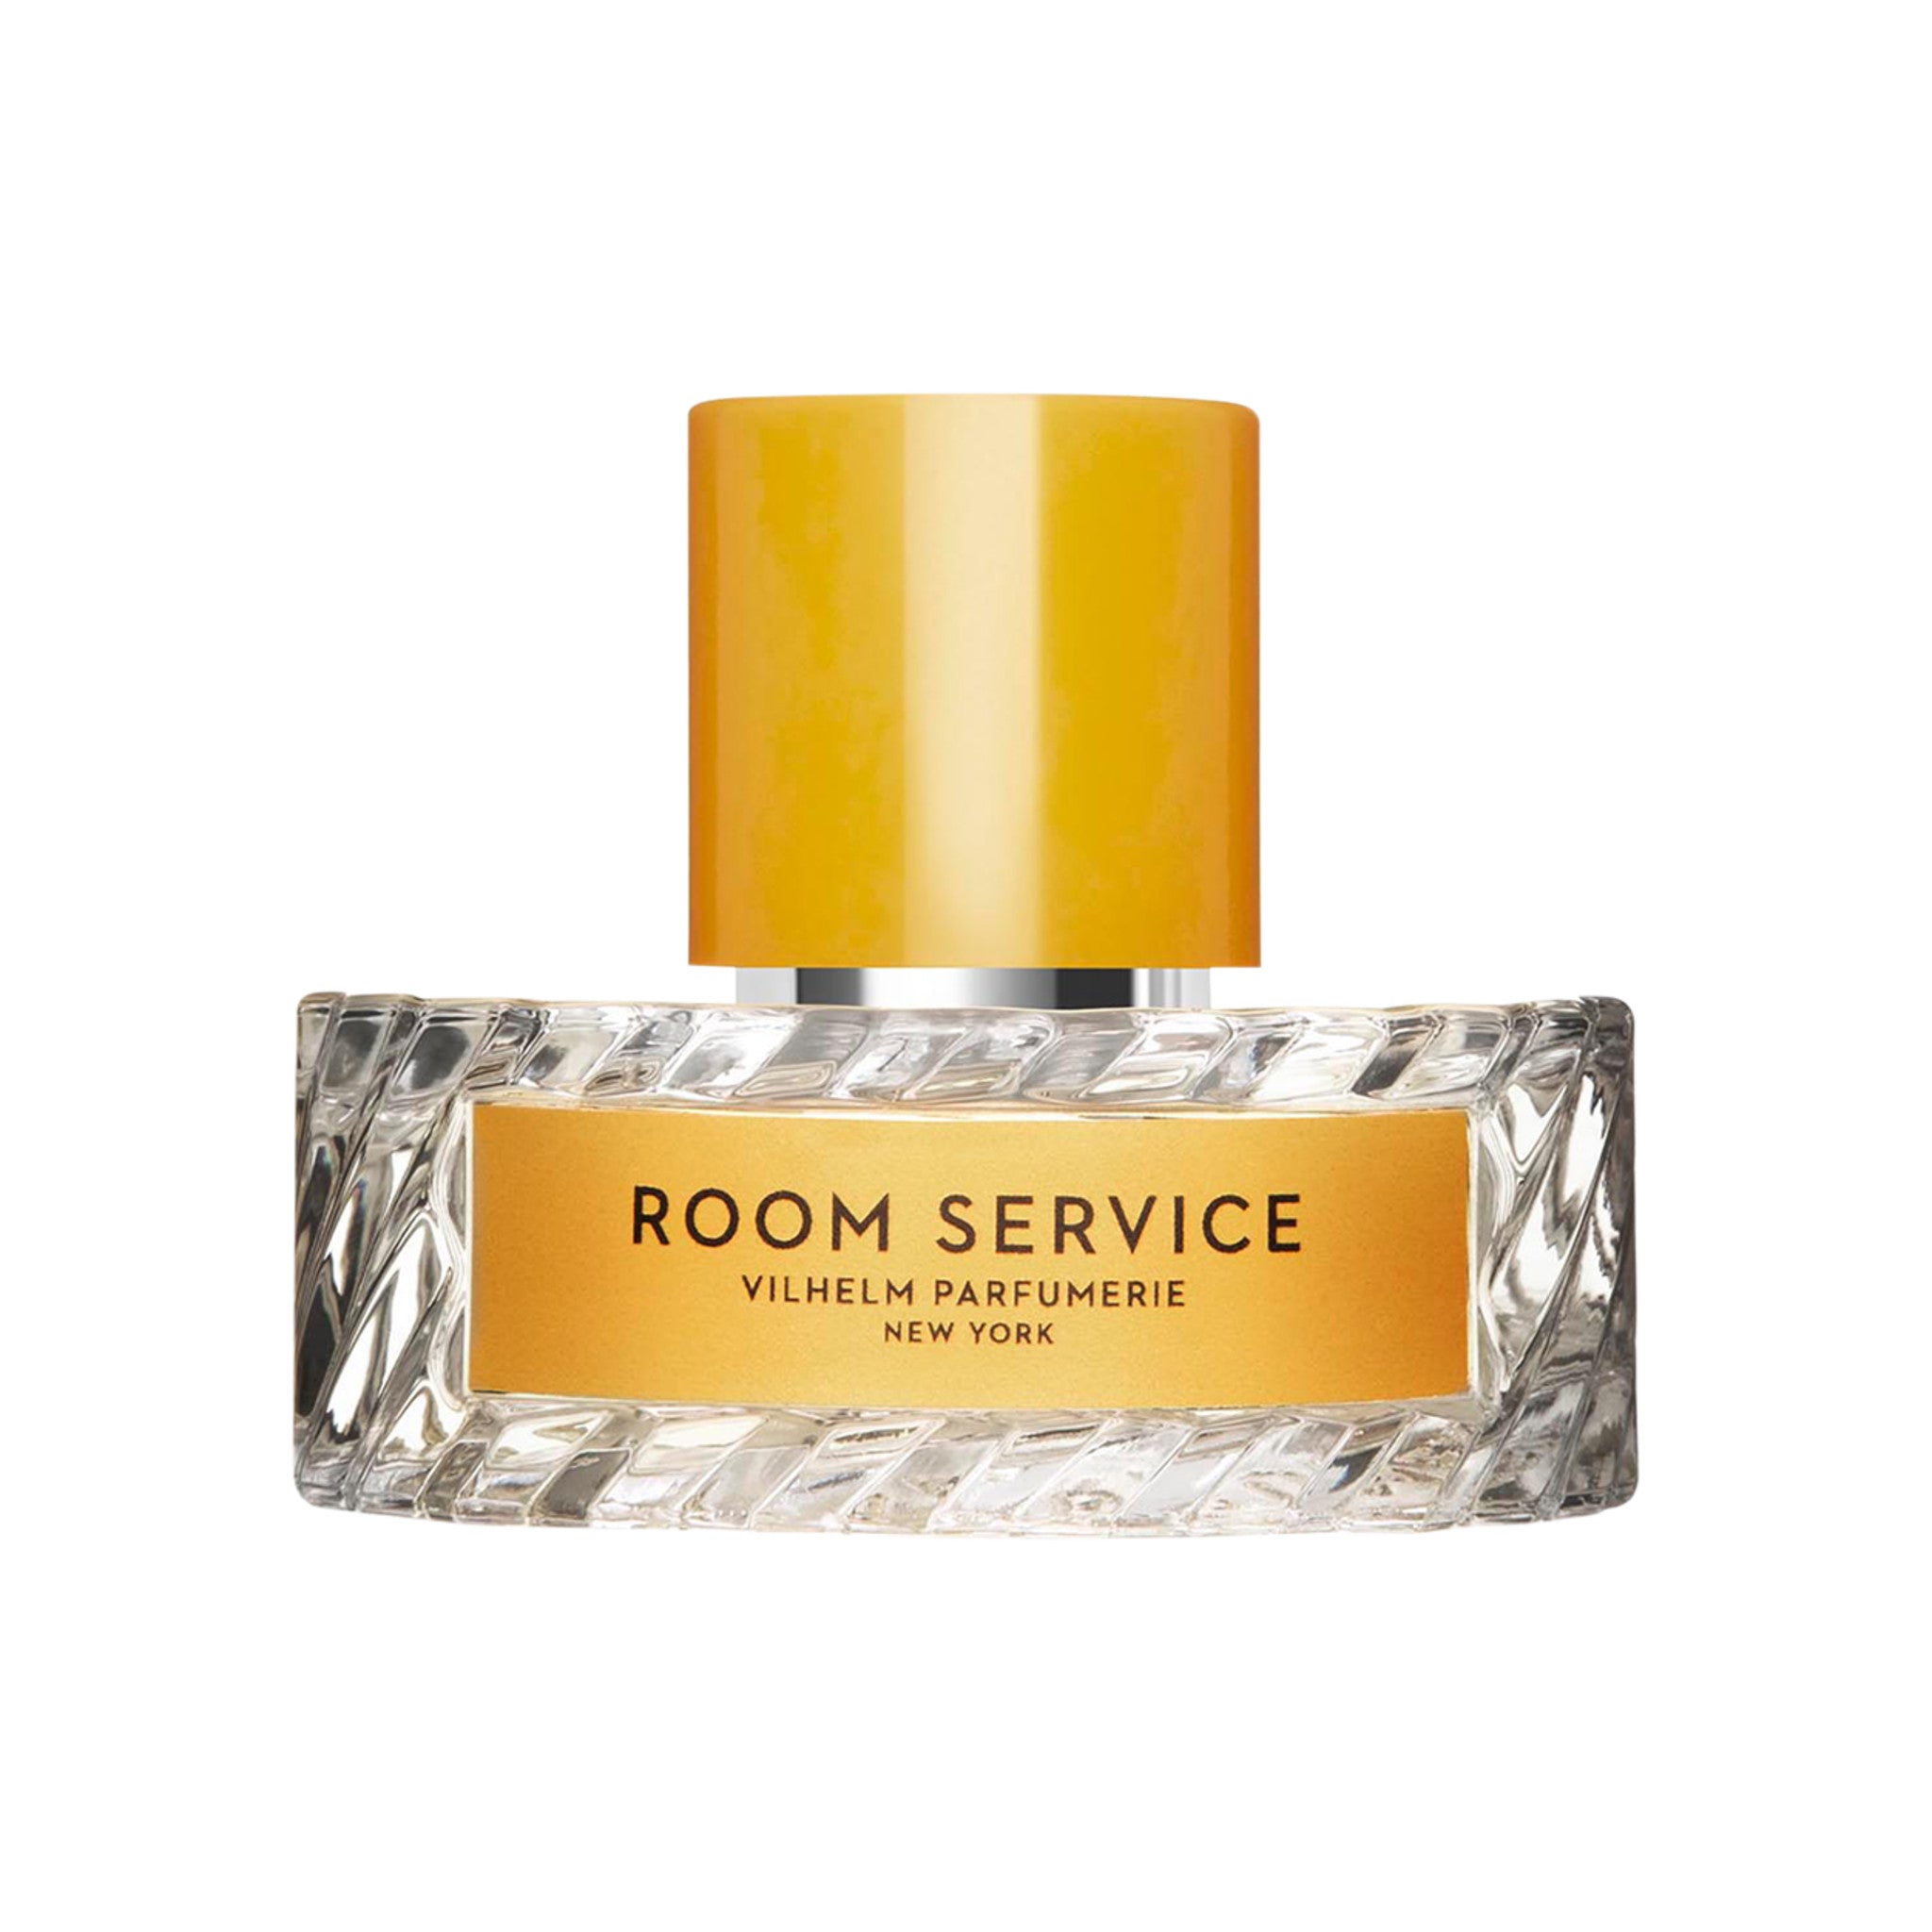 Vilhelm Parfumerie Room Service Eau de Parfum Size variant: 50 ml main image.